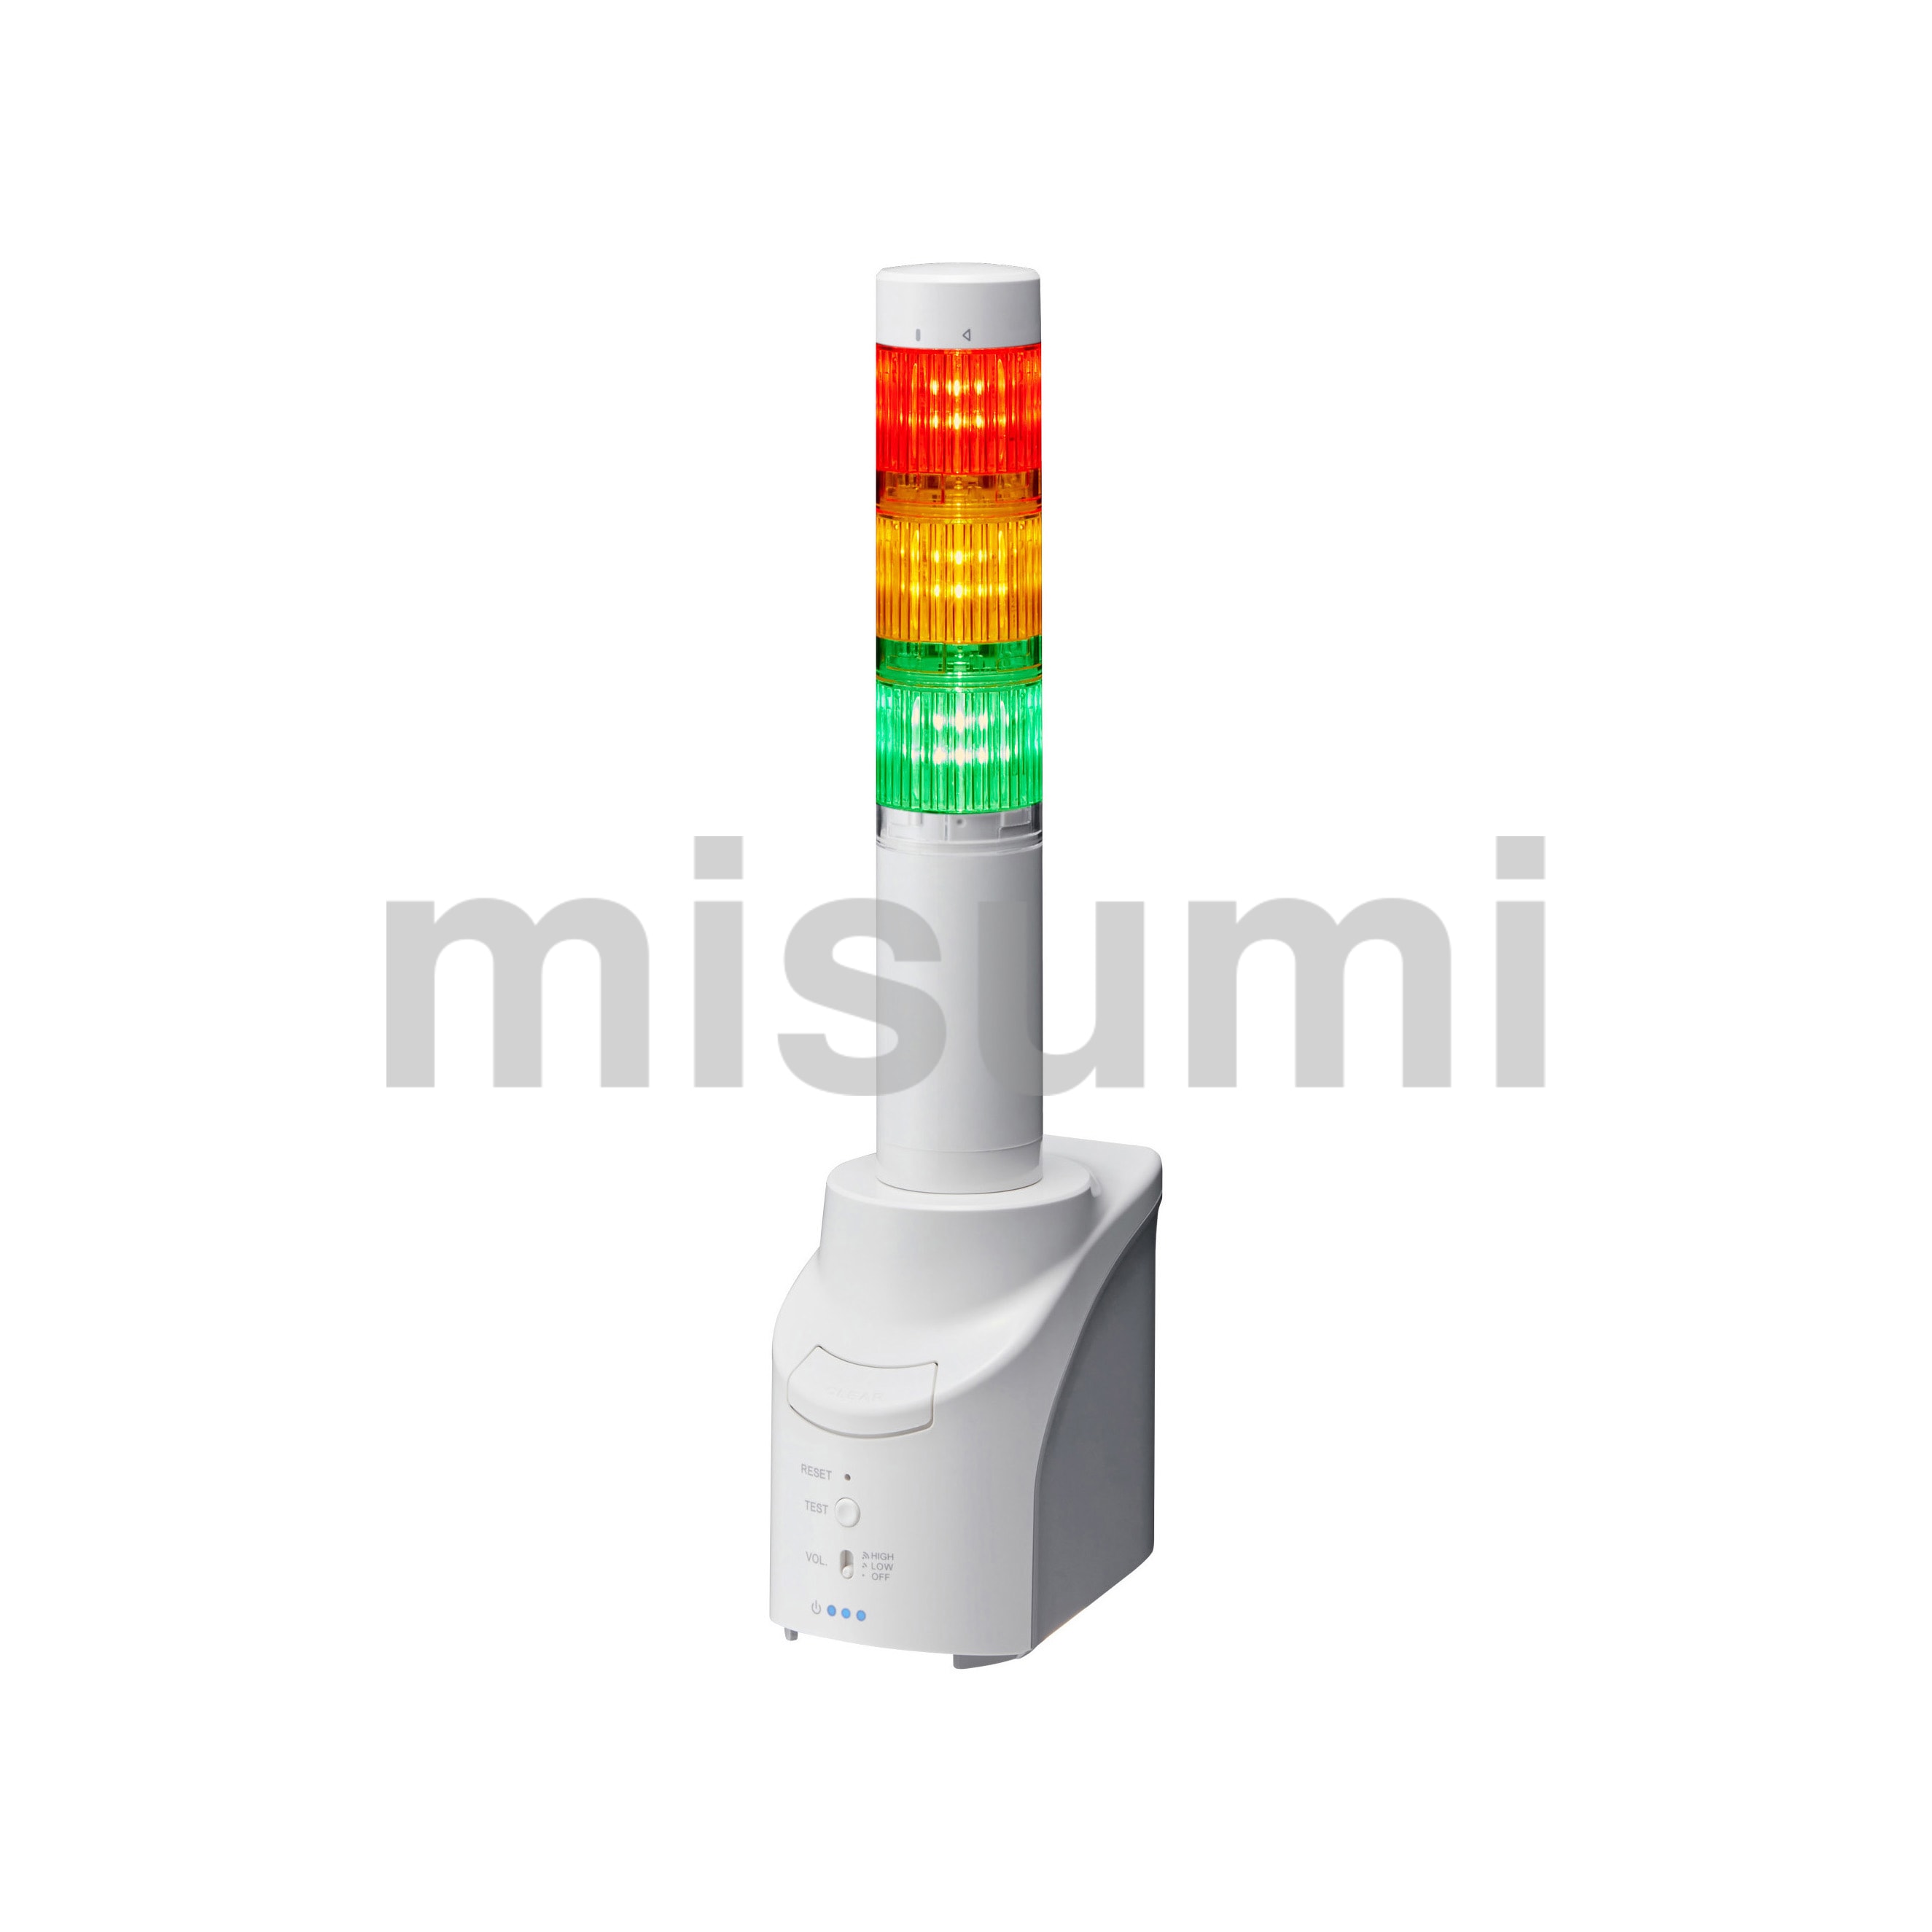 ネットワーク監視表示灯 NH-FB パトライト MISUMI(ミスミ)